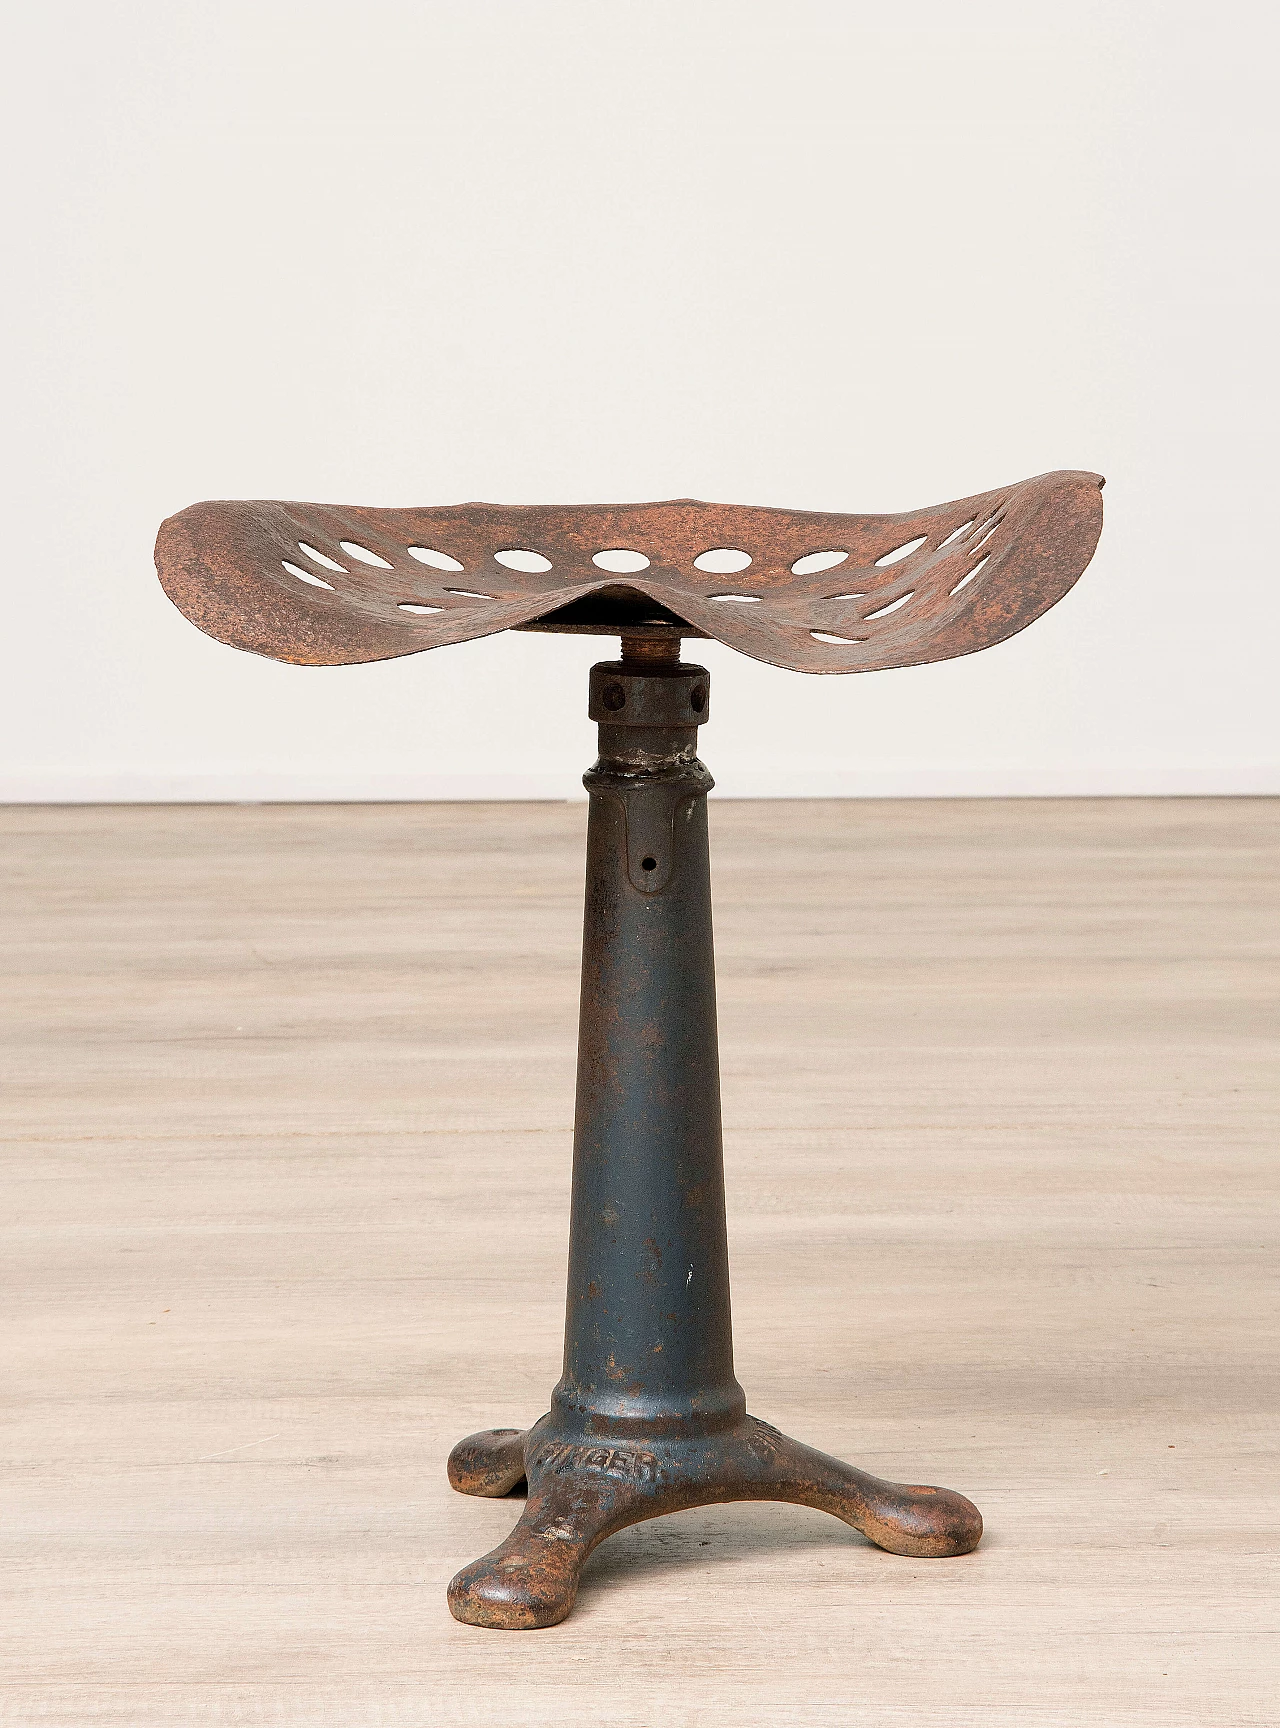 Metal stool, Singer 1088592